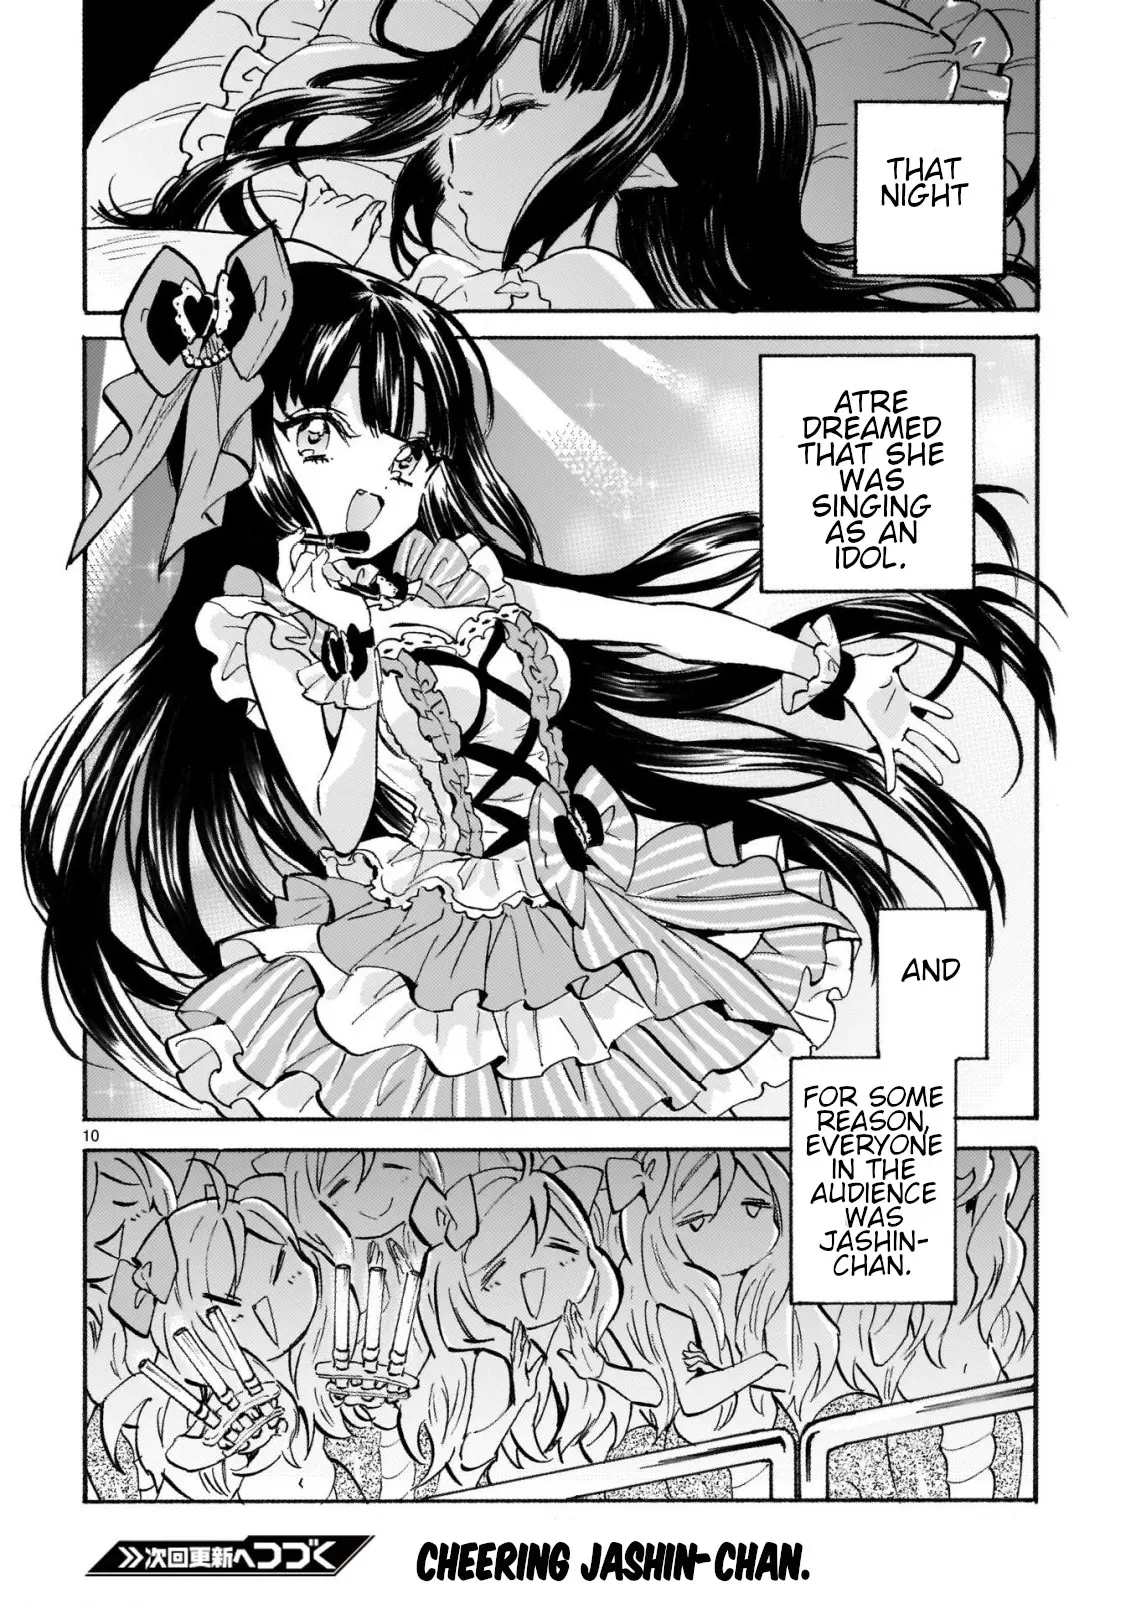 Jashin-chan Dropkick Chapter 261 - page 10